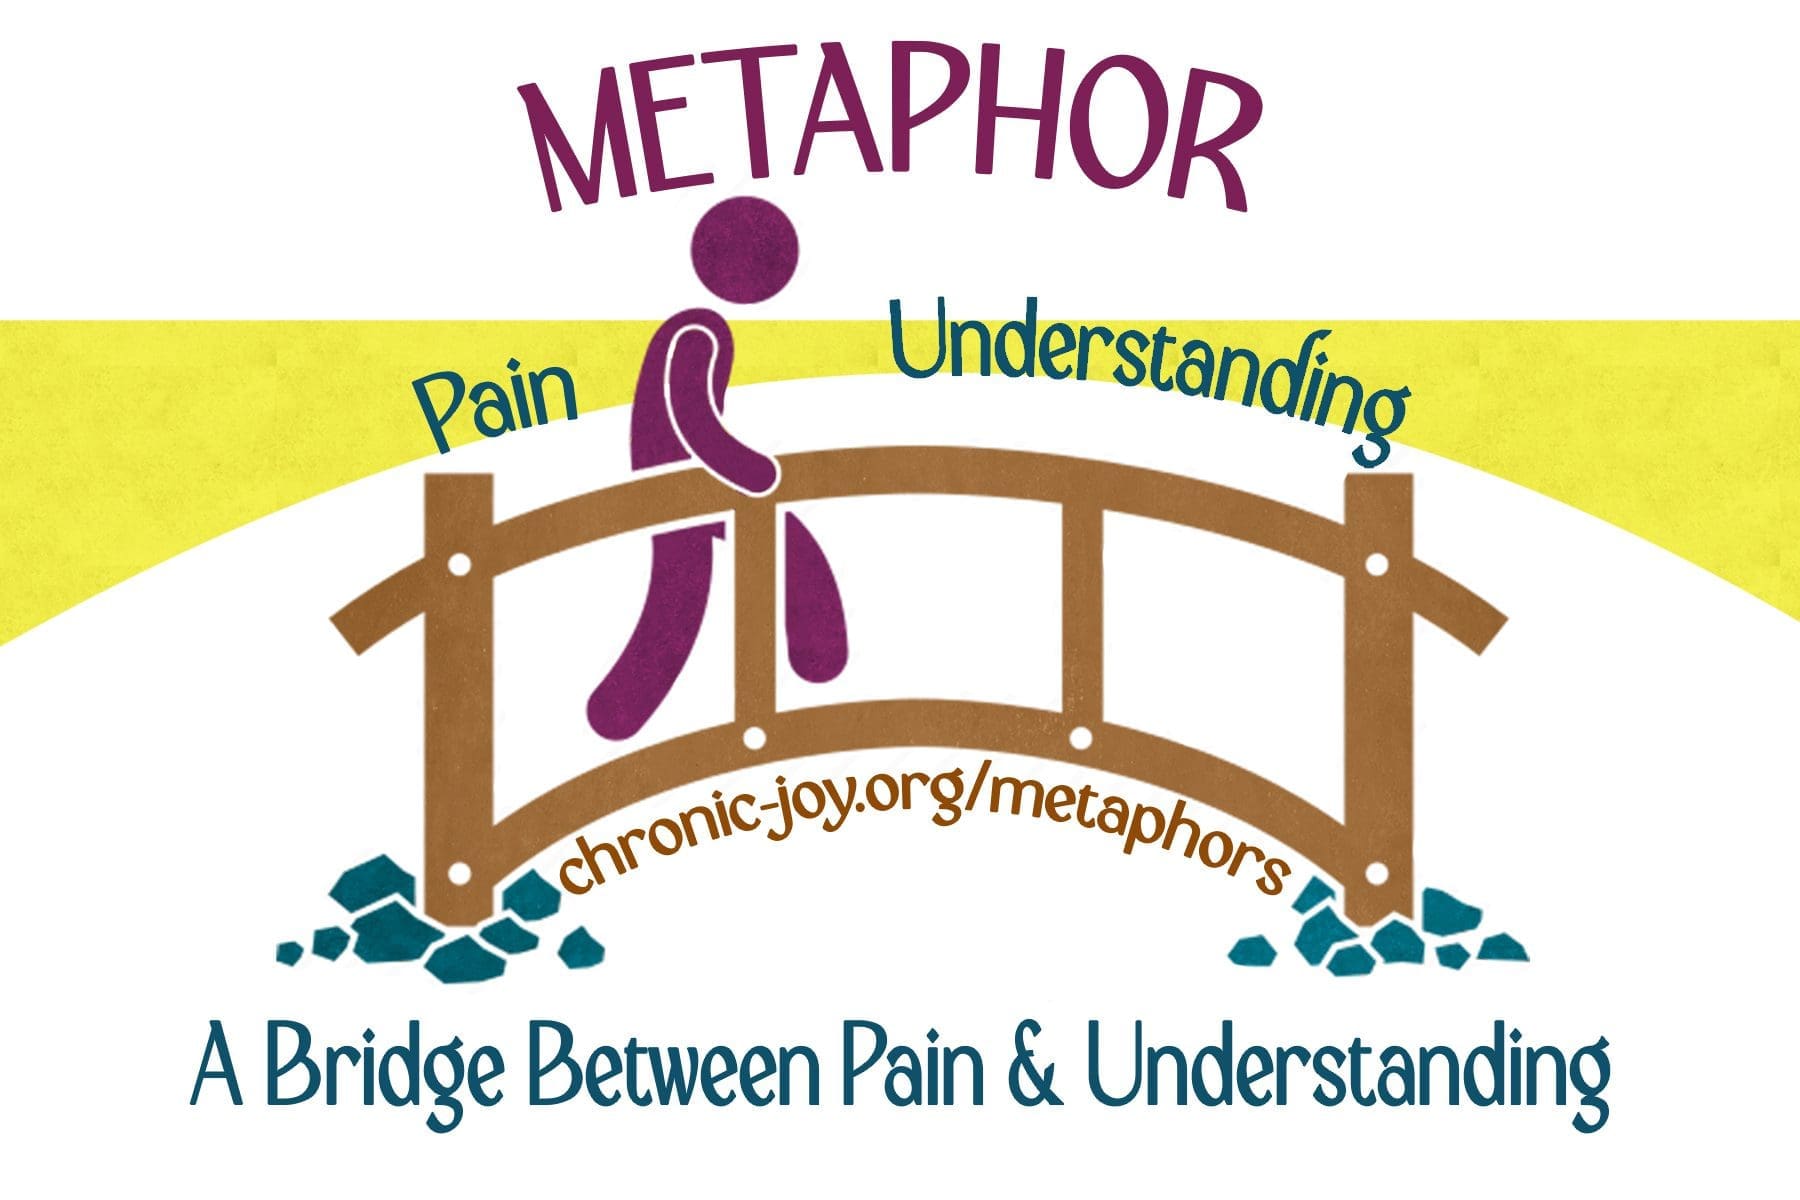 Metaphor • A Bridge Between Pain & Understanding